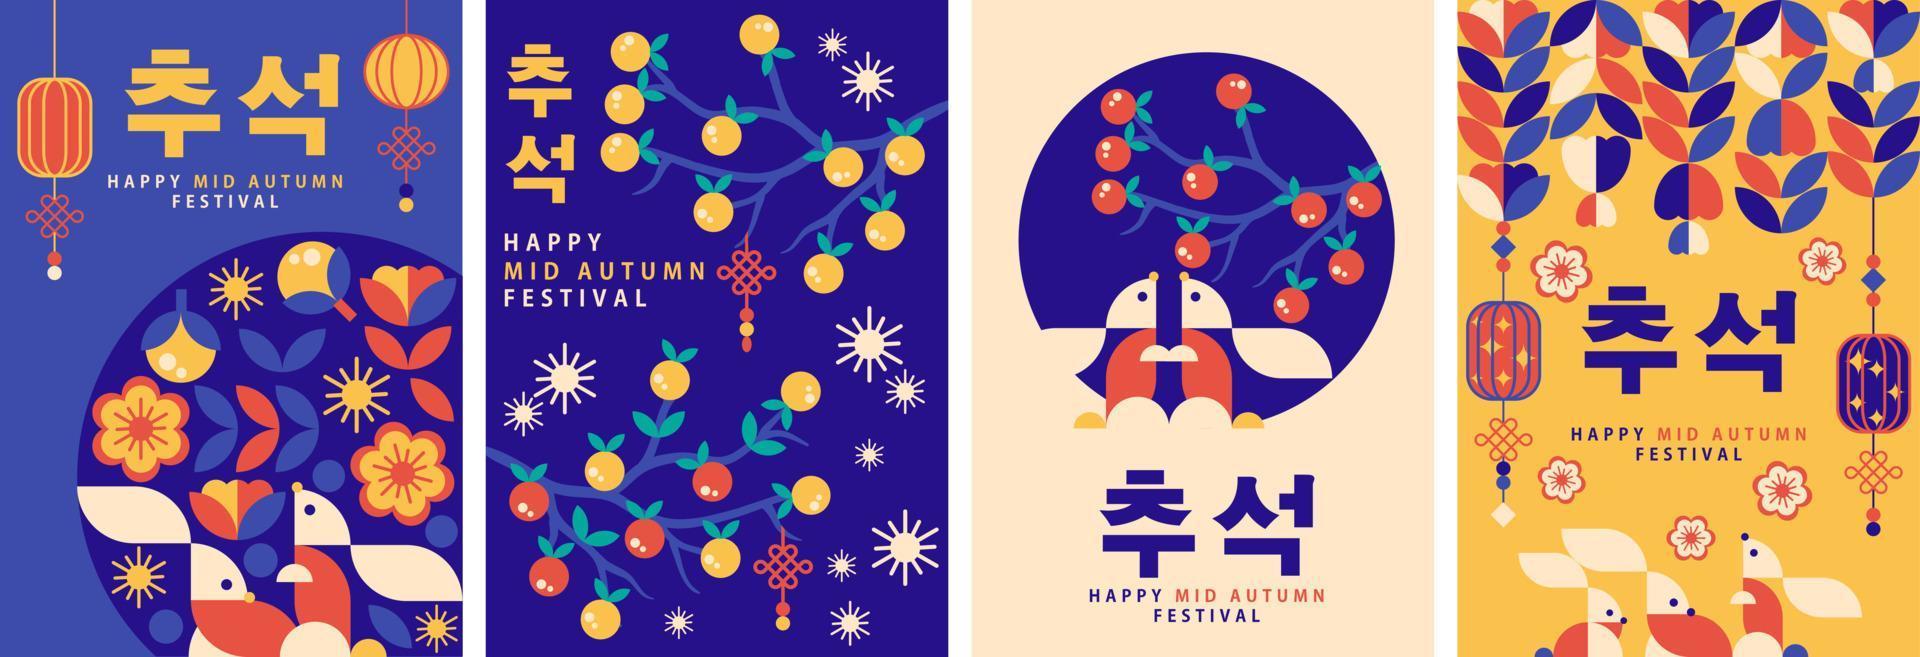 koreanisches mittherbstfest geometrisches plakat, hintergrund, grußkarte, buchumschlagvektorsatzsammlung vektor